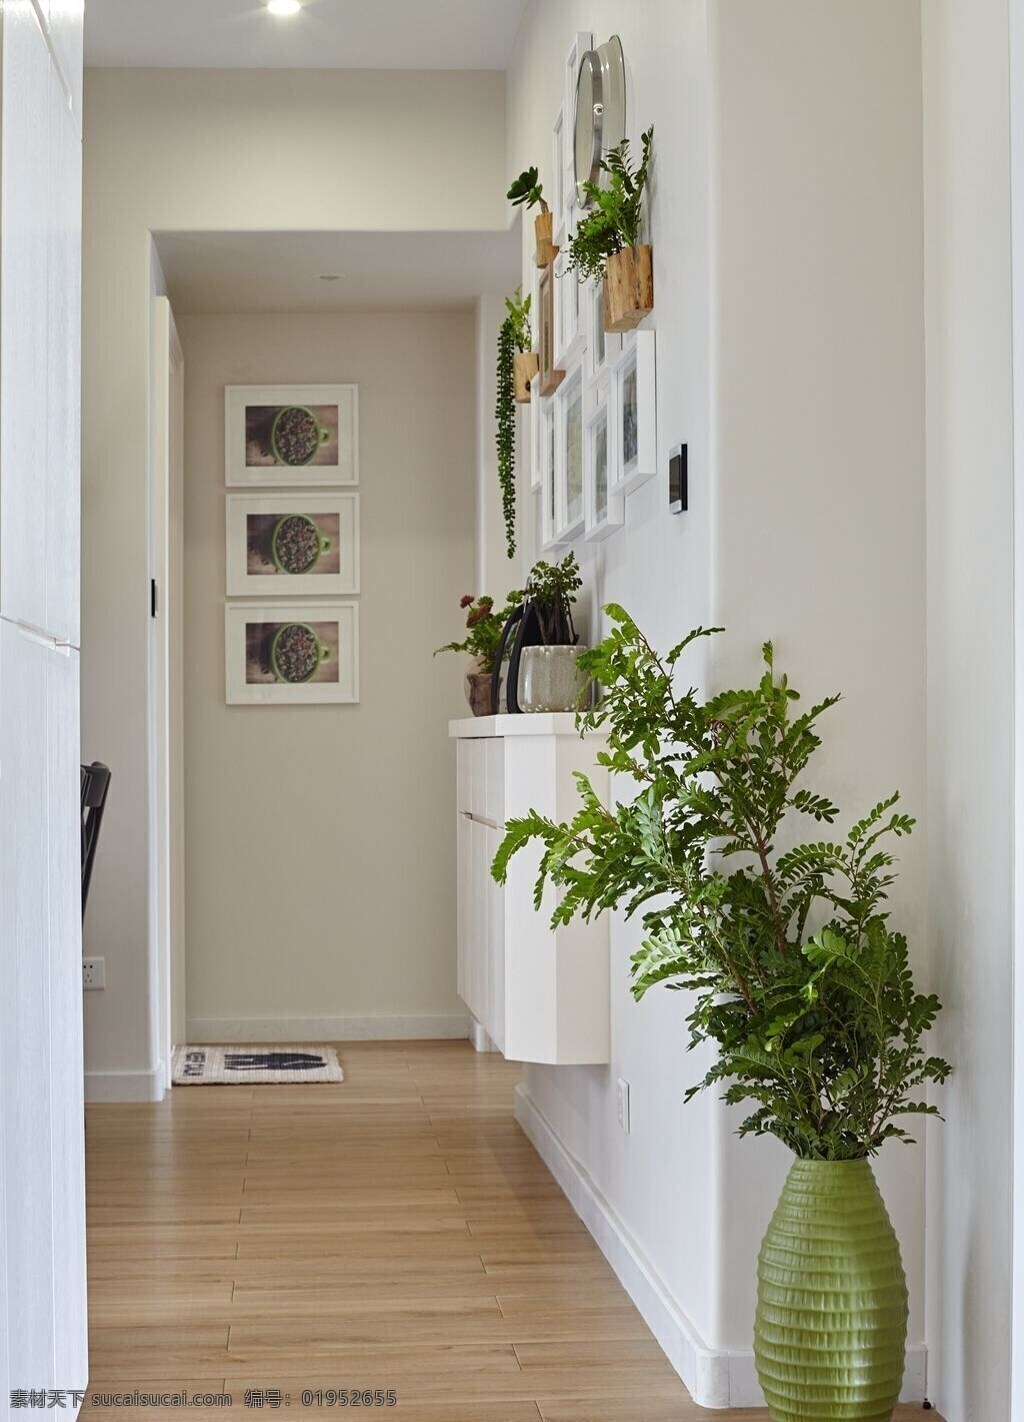 简约 入户 走廊 木地板 装修 效果图 白色墙壁 白色射灯 壁画 方形吊顶 过道 植物 置物柜